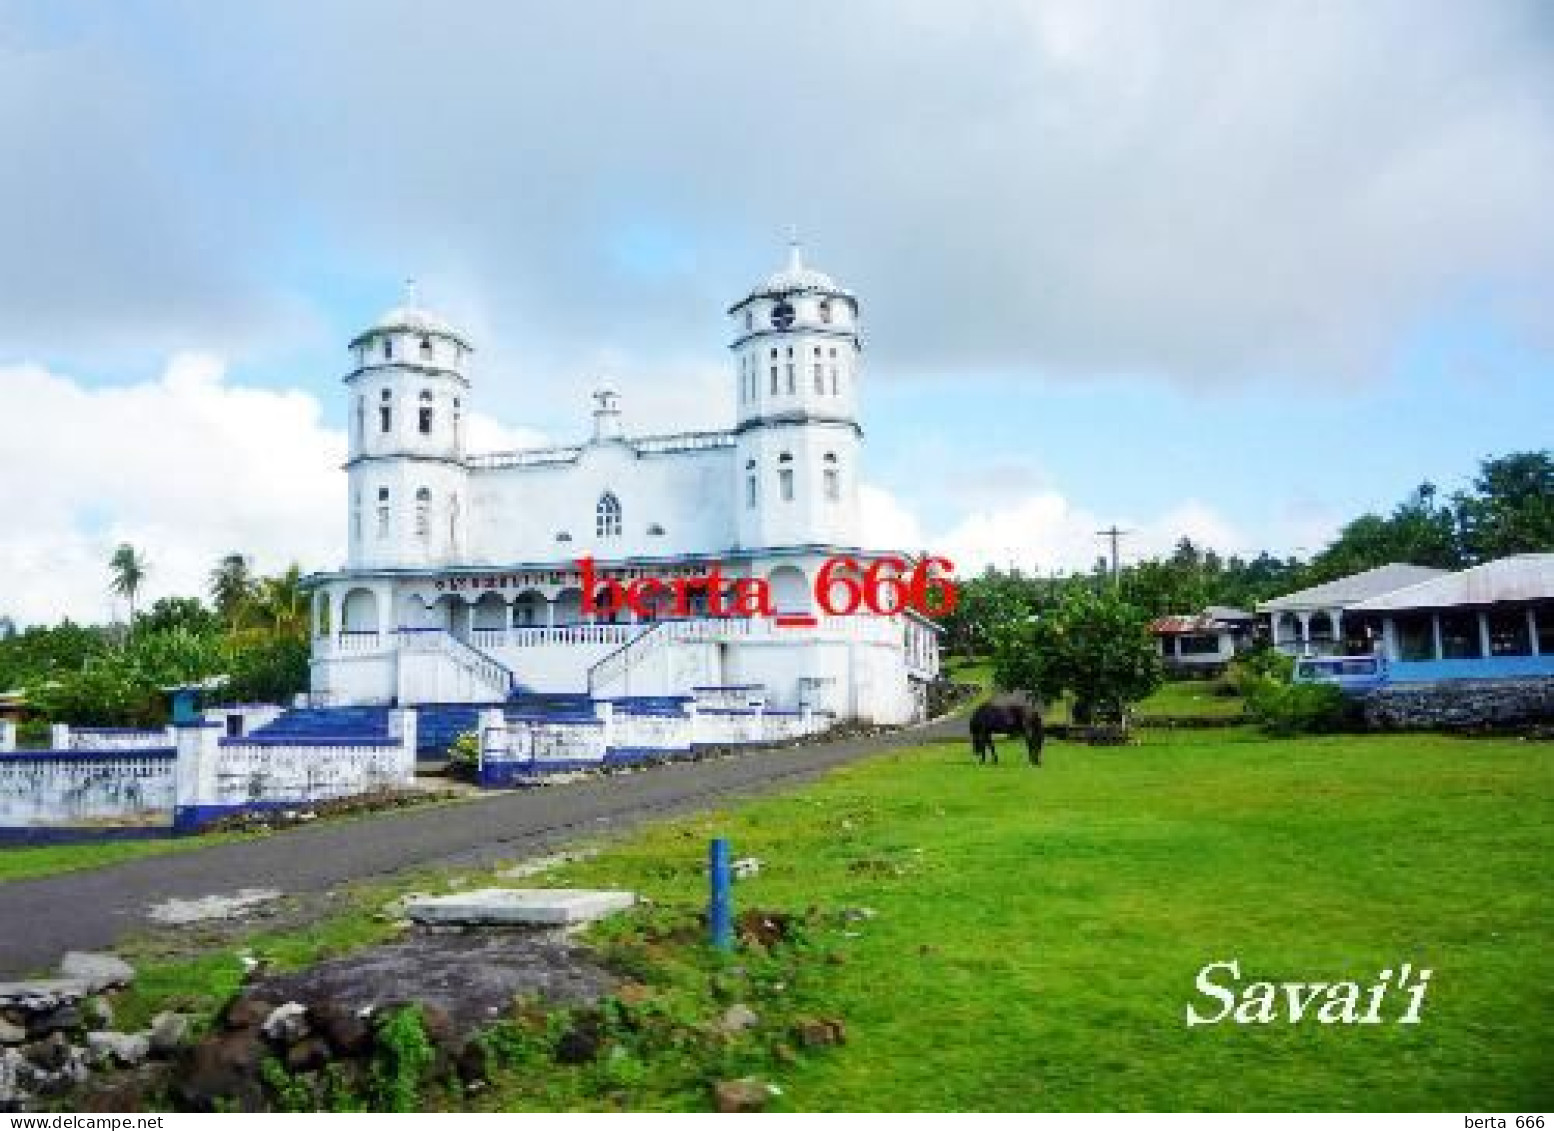 Samoa Savaii Church New Postcard - Samoa